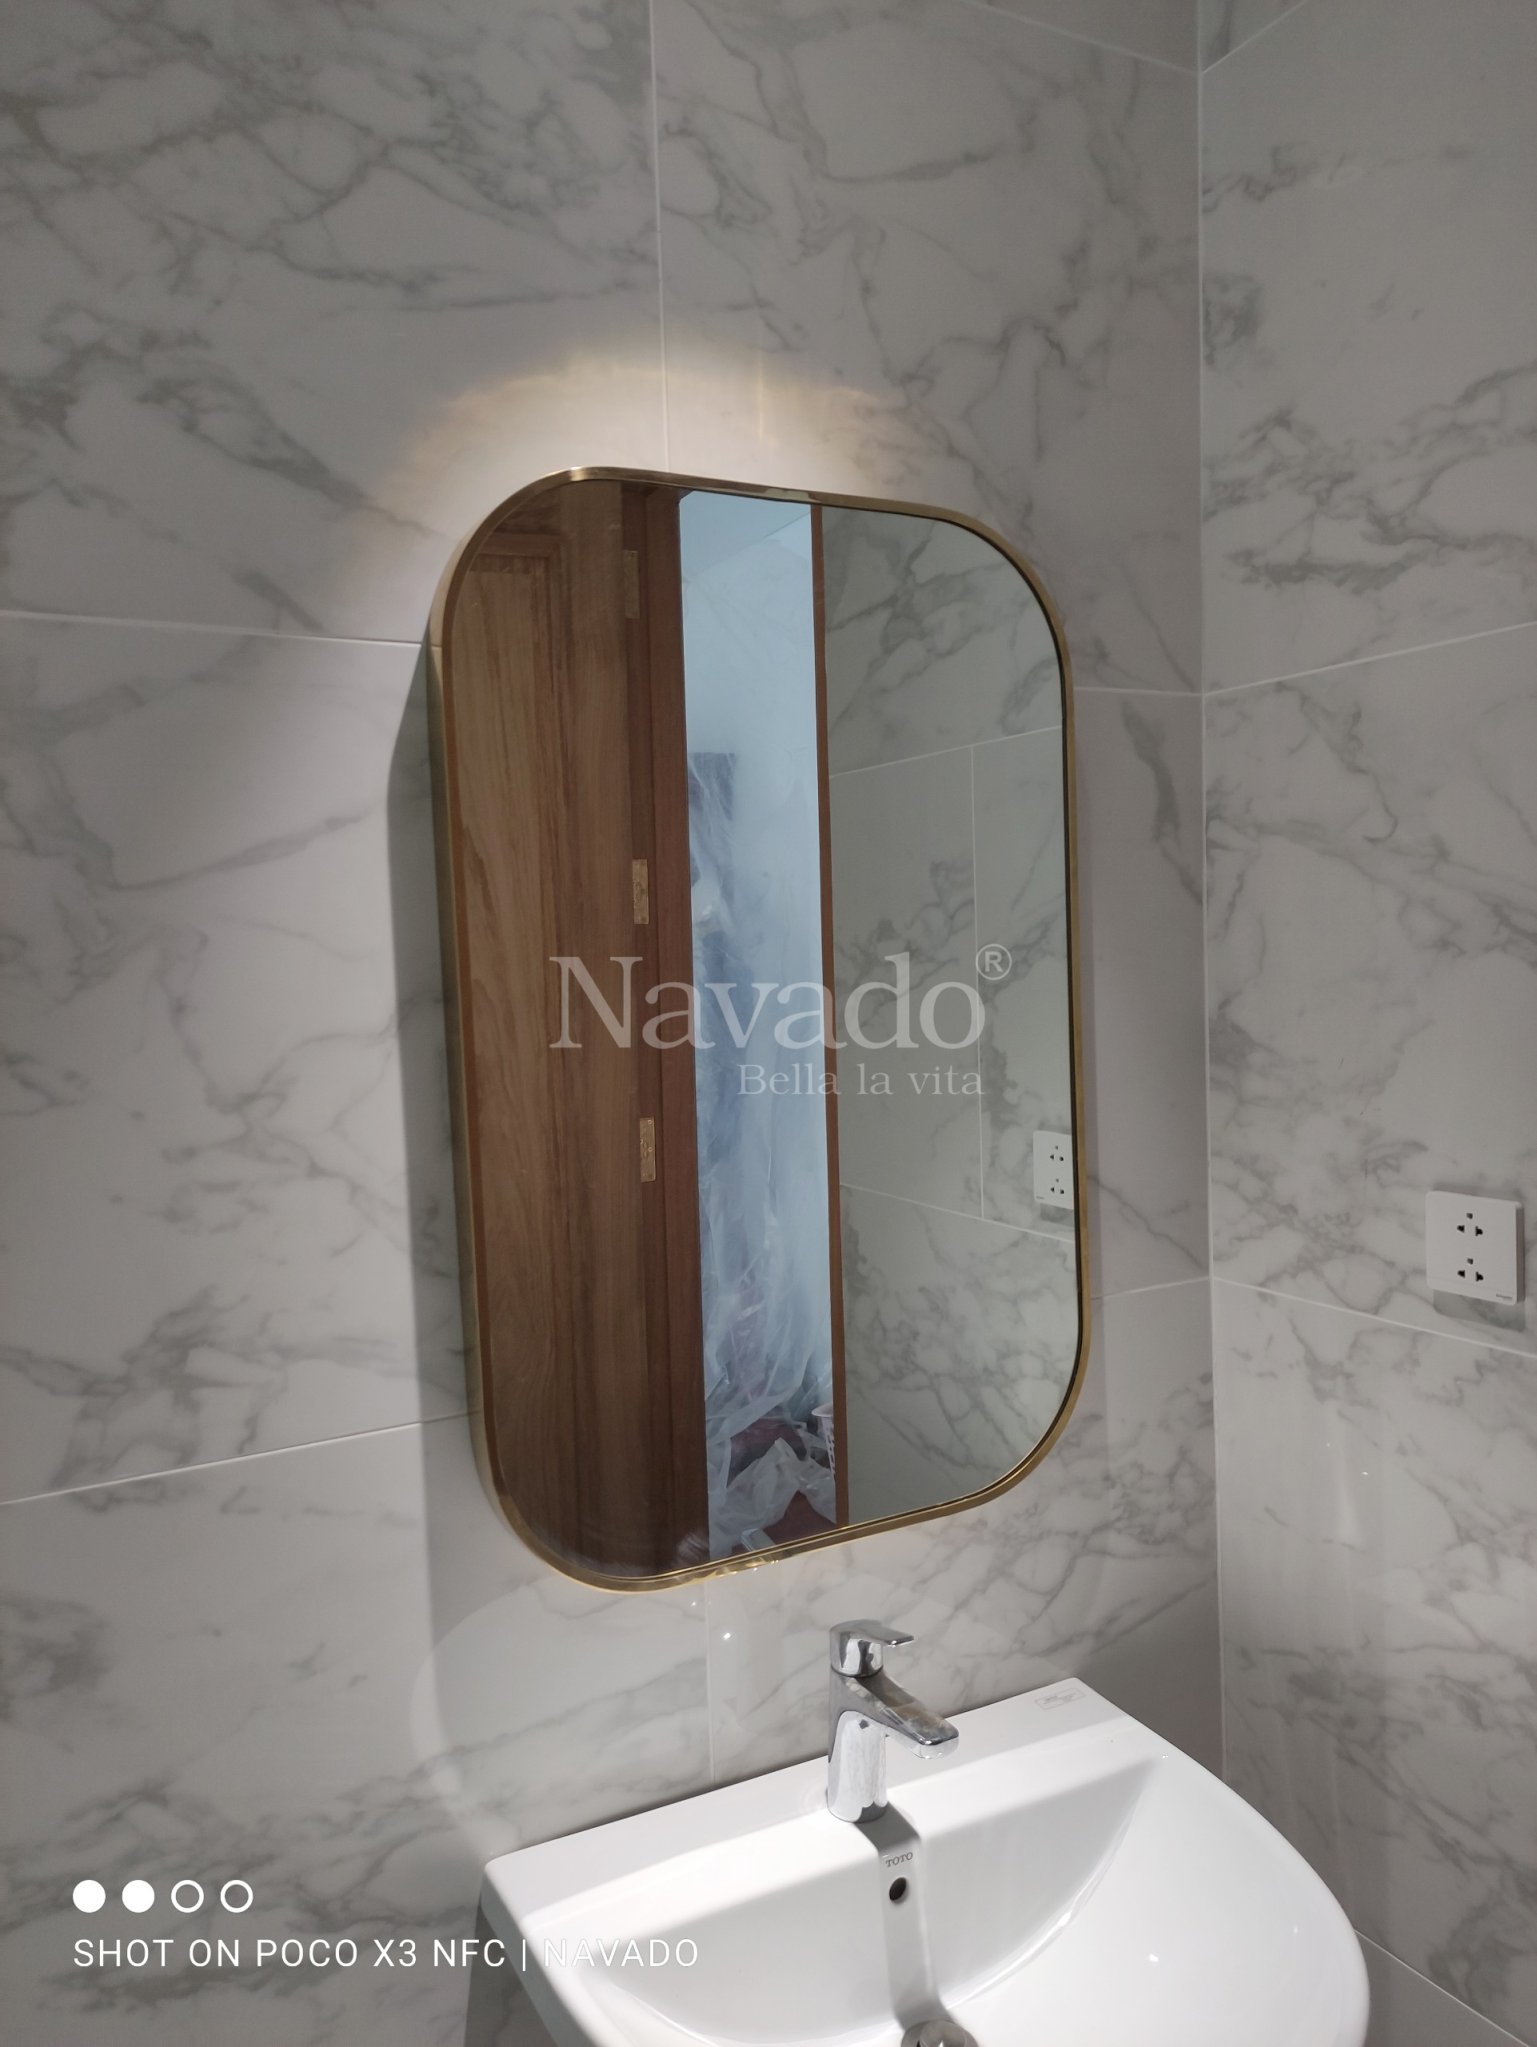 Gương phòng tắm Navado Sài Gòn: Cho dù bạn đang muốn tìm kiếm sản phẩm gương phòng tắm đẳng cấp hay một thiết kế tinh tế cho không gian phòng tắm của mình, Navado Sài Gòn sẽ mang đến cho bạn sự đa dạng và sự tiện nghi. Khám phá tất cả những sản phẩm đẳng cấp của Navado và cập nhật cho phòng tắm của bạn những sản phẩm chất lượng!